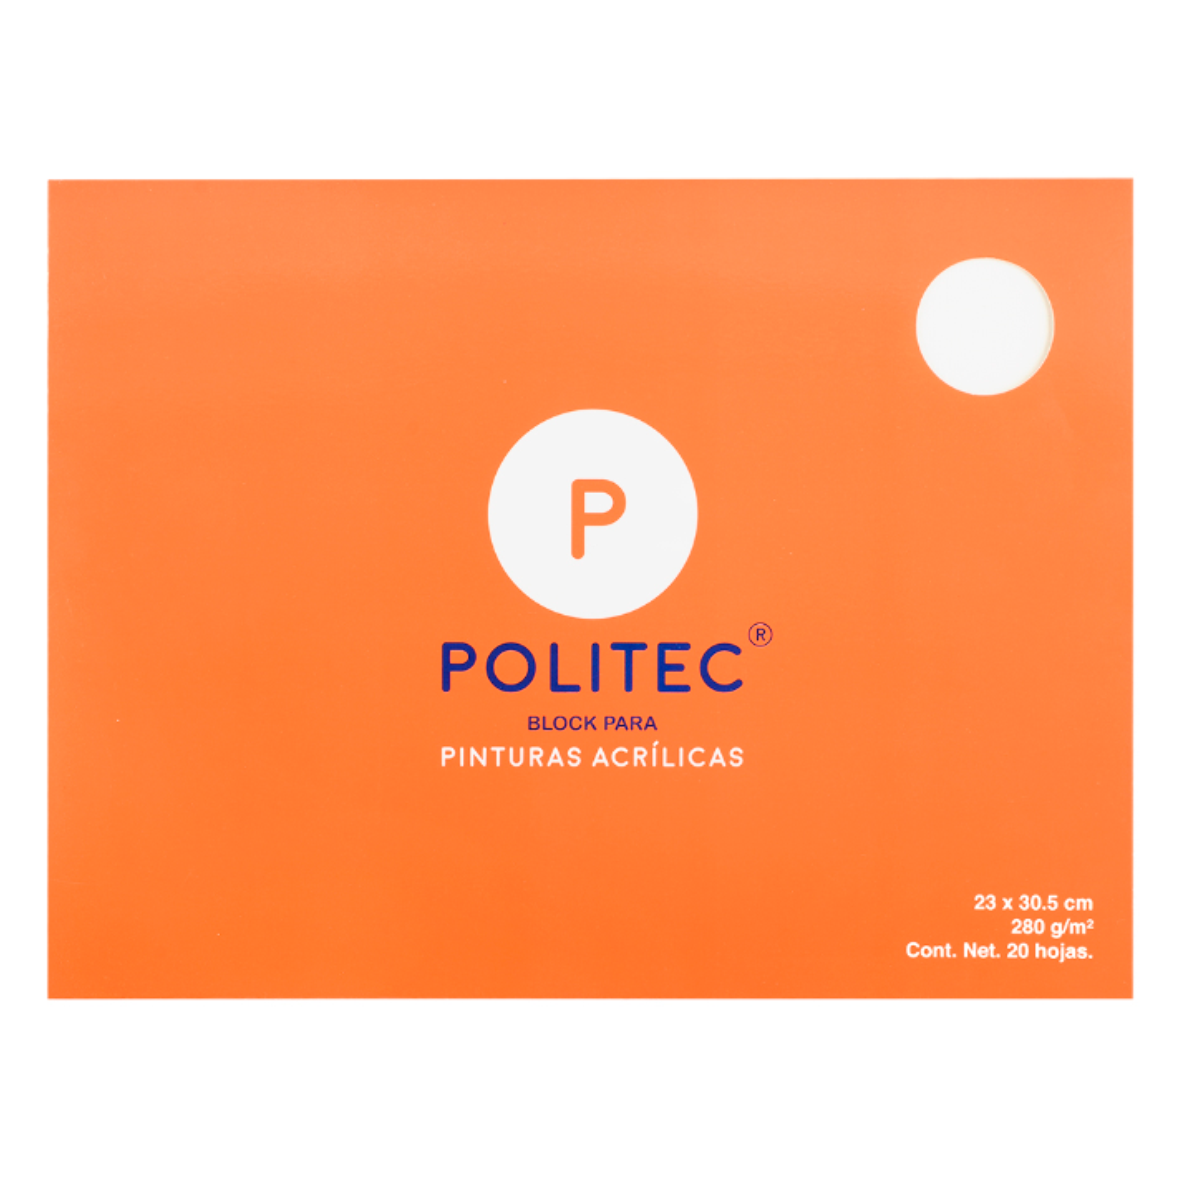 POLITEC - Block para pinturas acrílicas